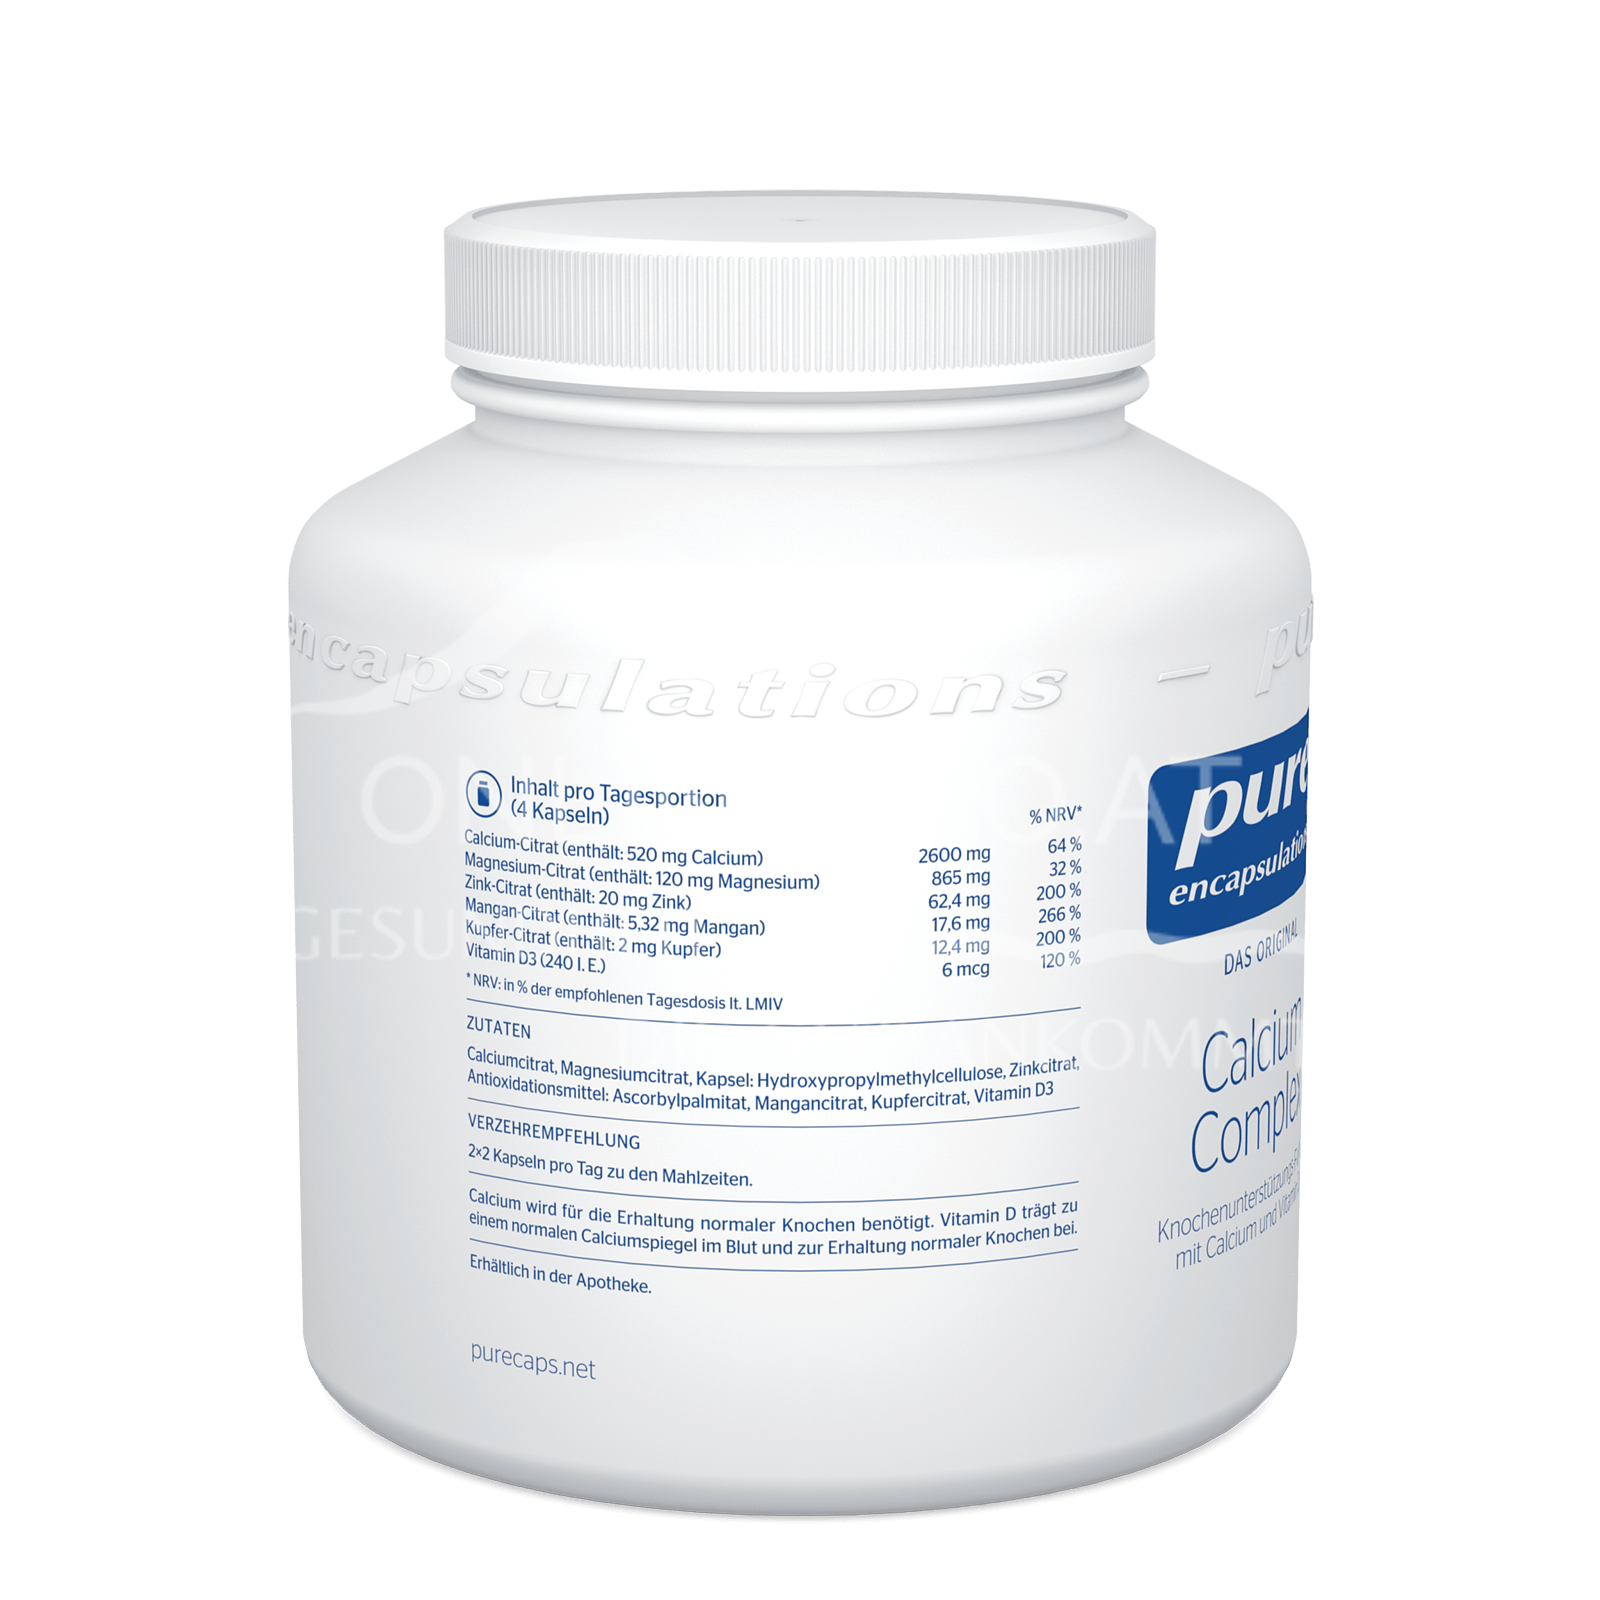 pure encapsulations® Calcium Complex